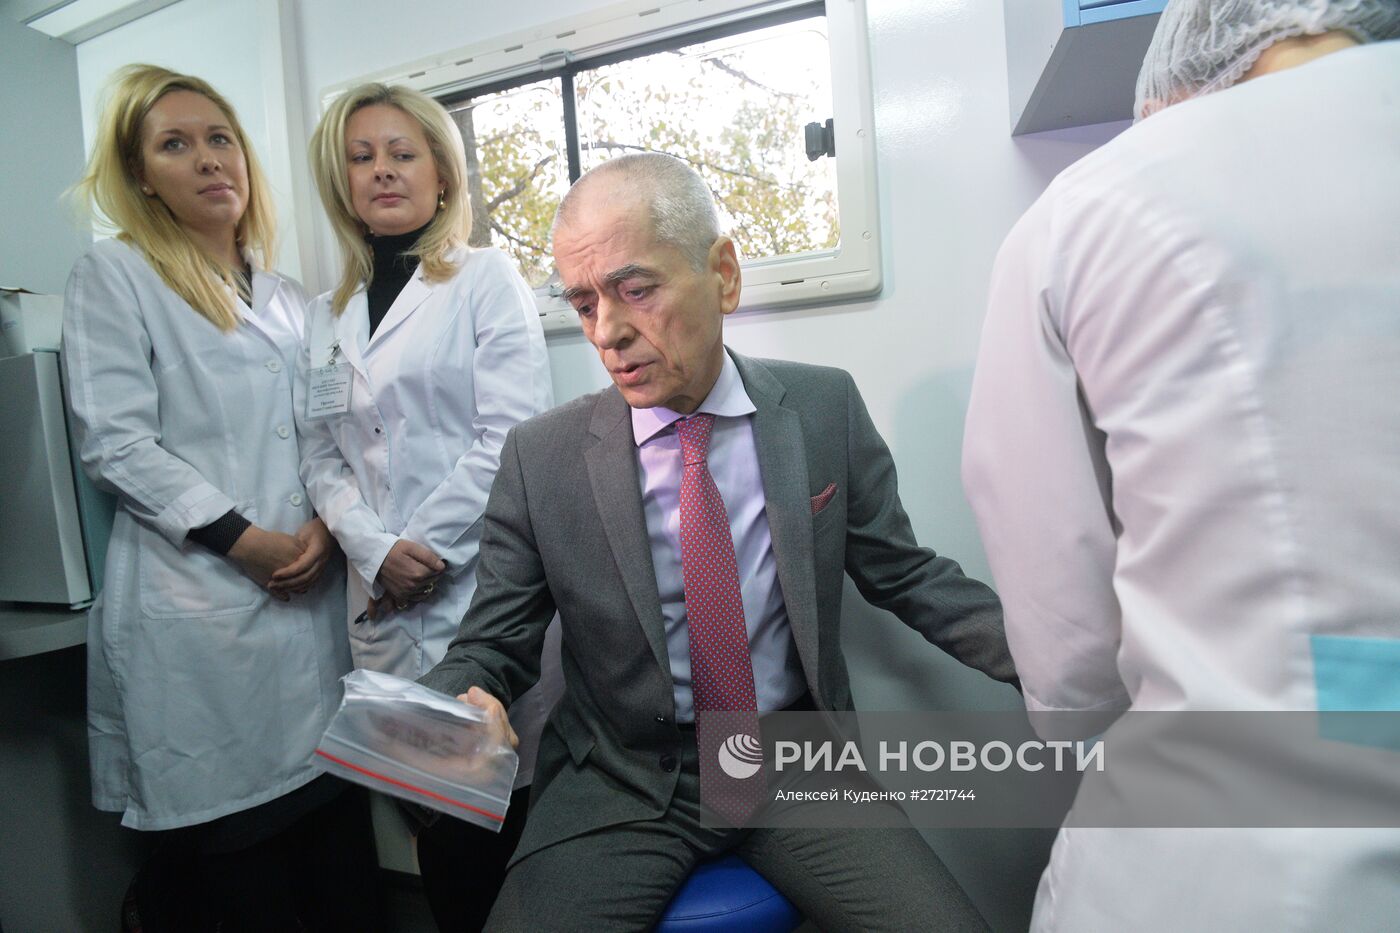 Руководитель Роспотребнадзора А.Попова и Г.Онищенко прошли тест на ВИЧ